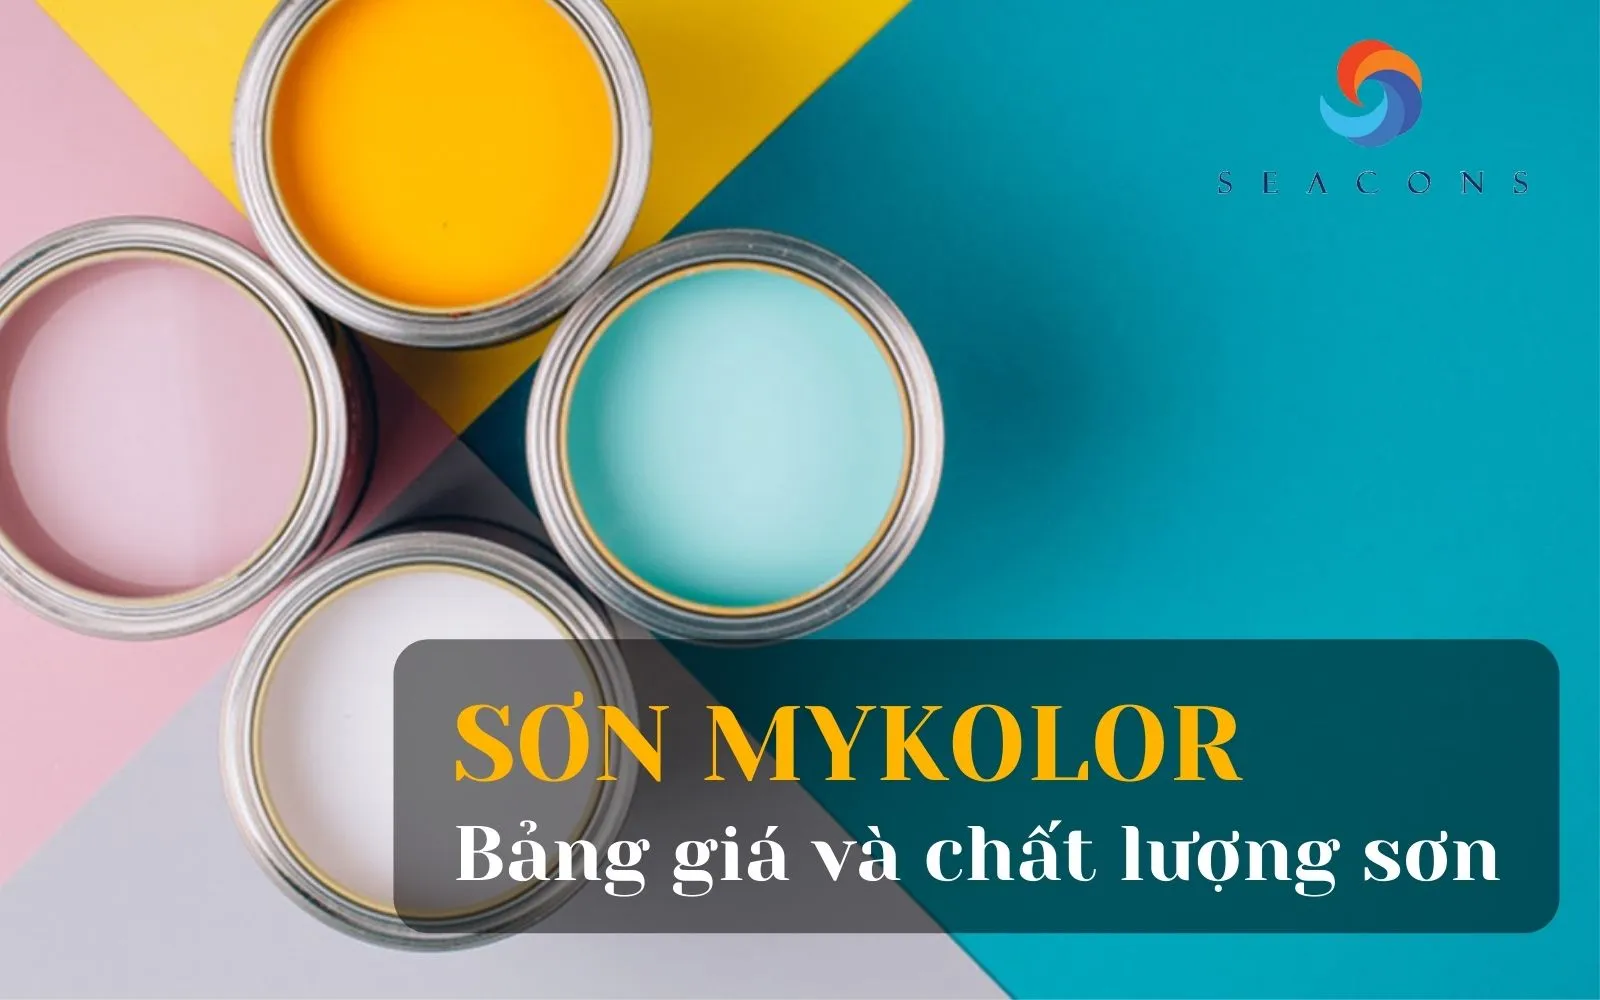 7. Ứng dụng thực tế của sơn Mykolor